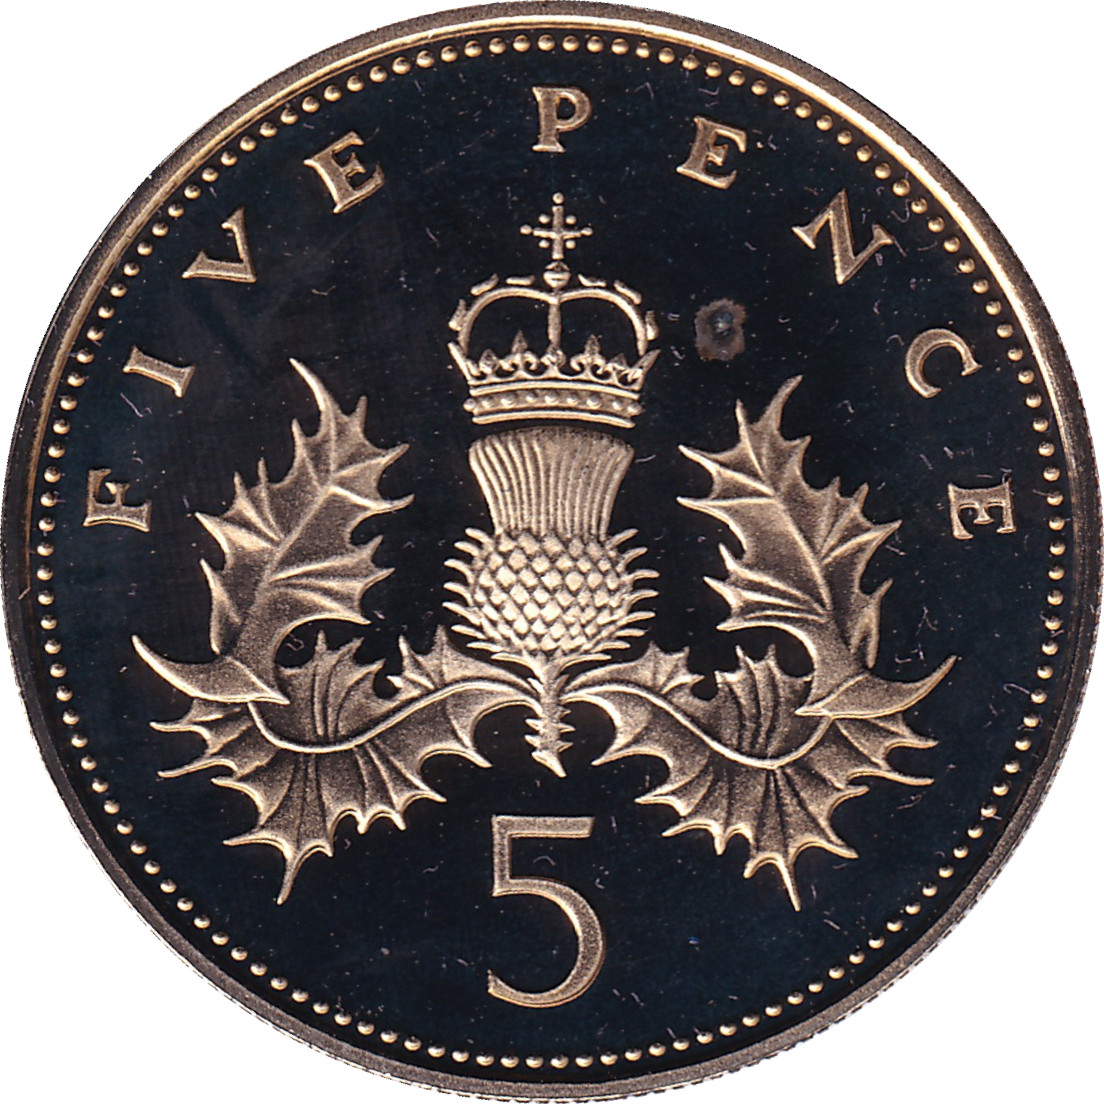 5 pence - Elizabeth II - Buste jeune